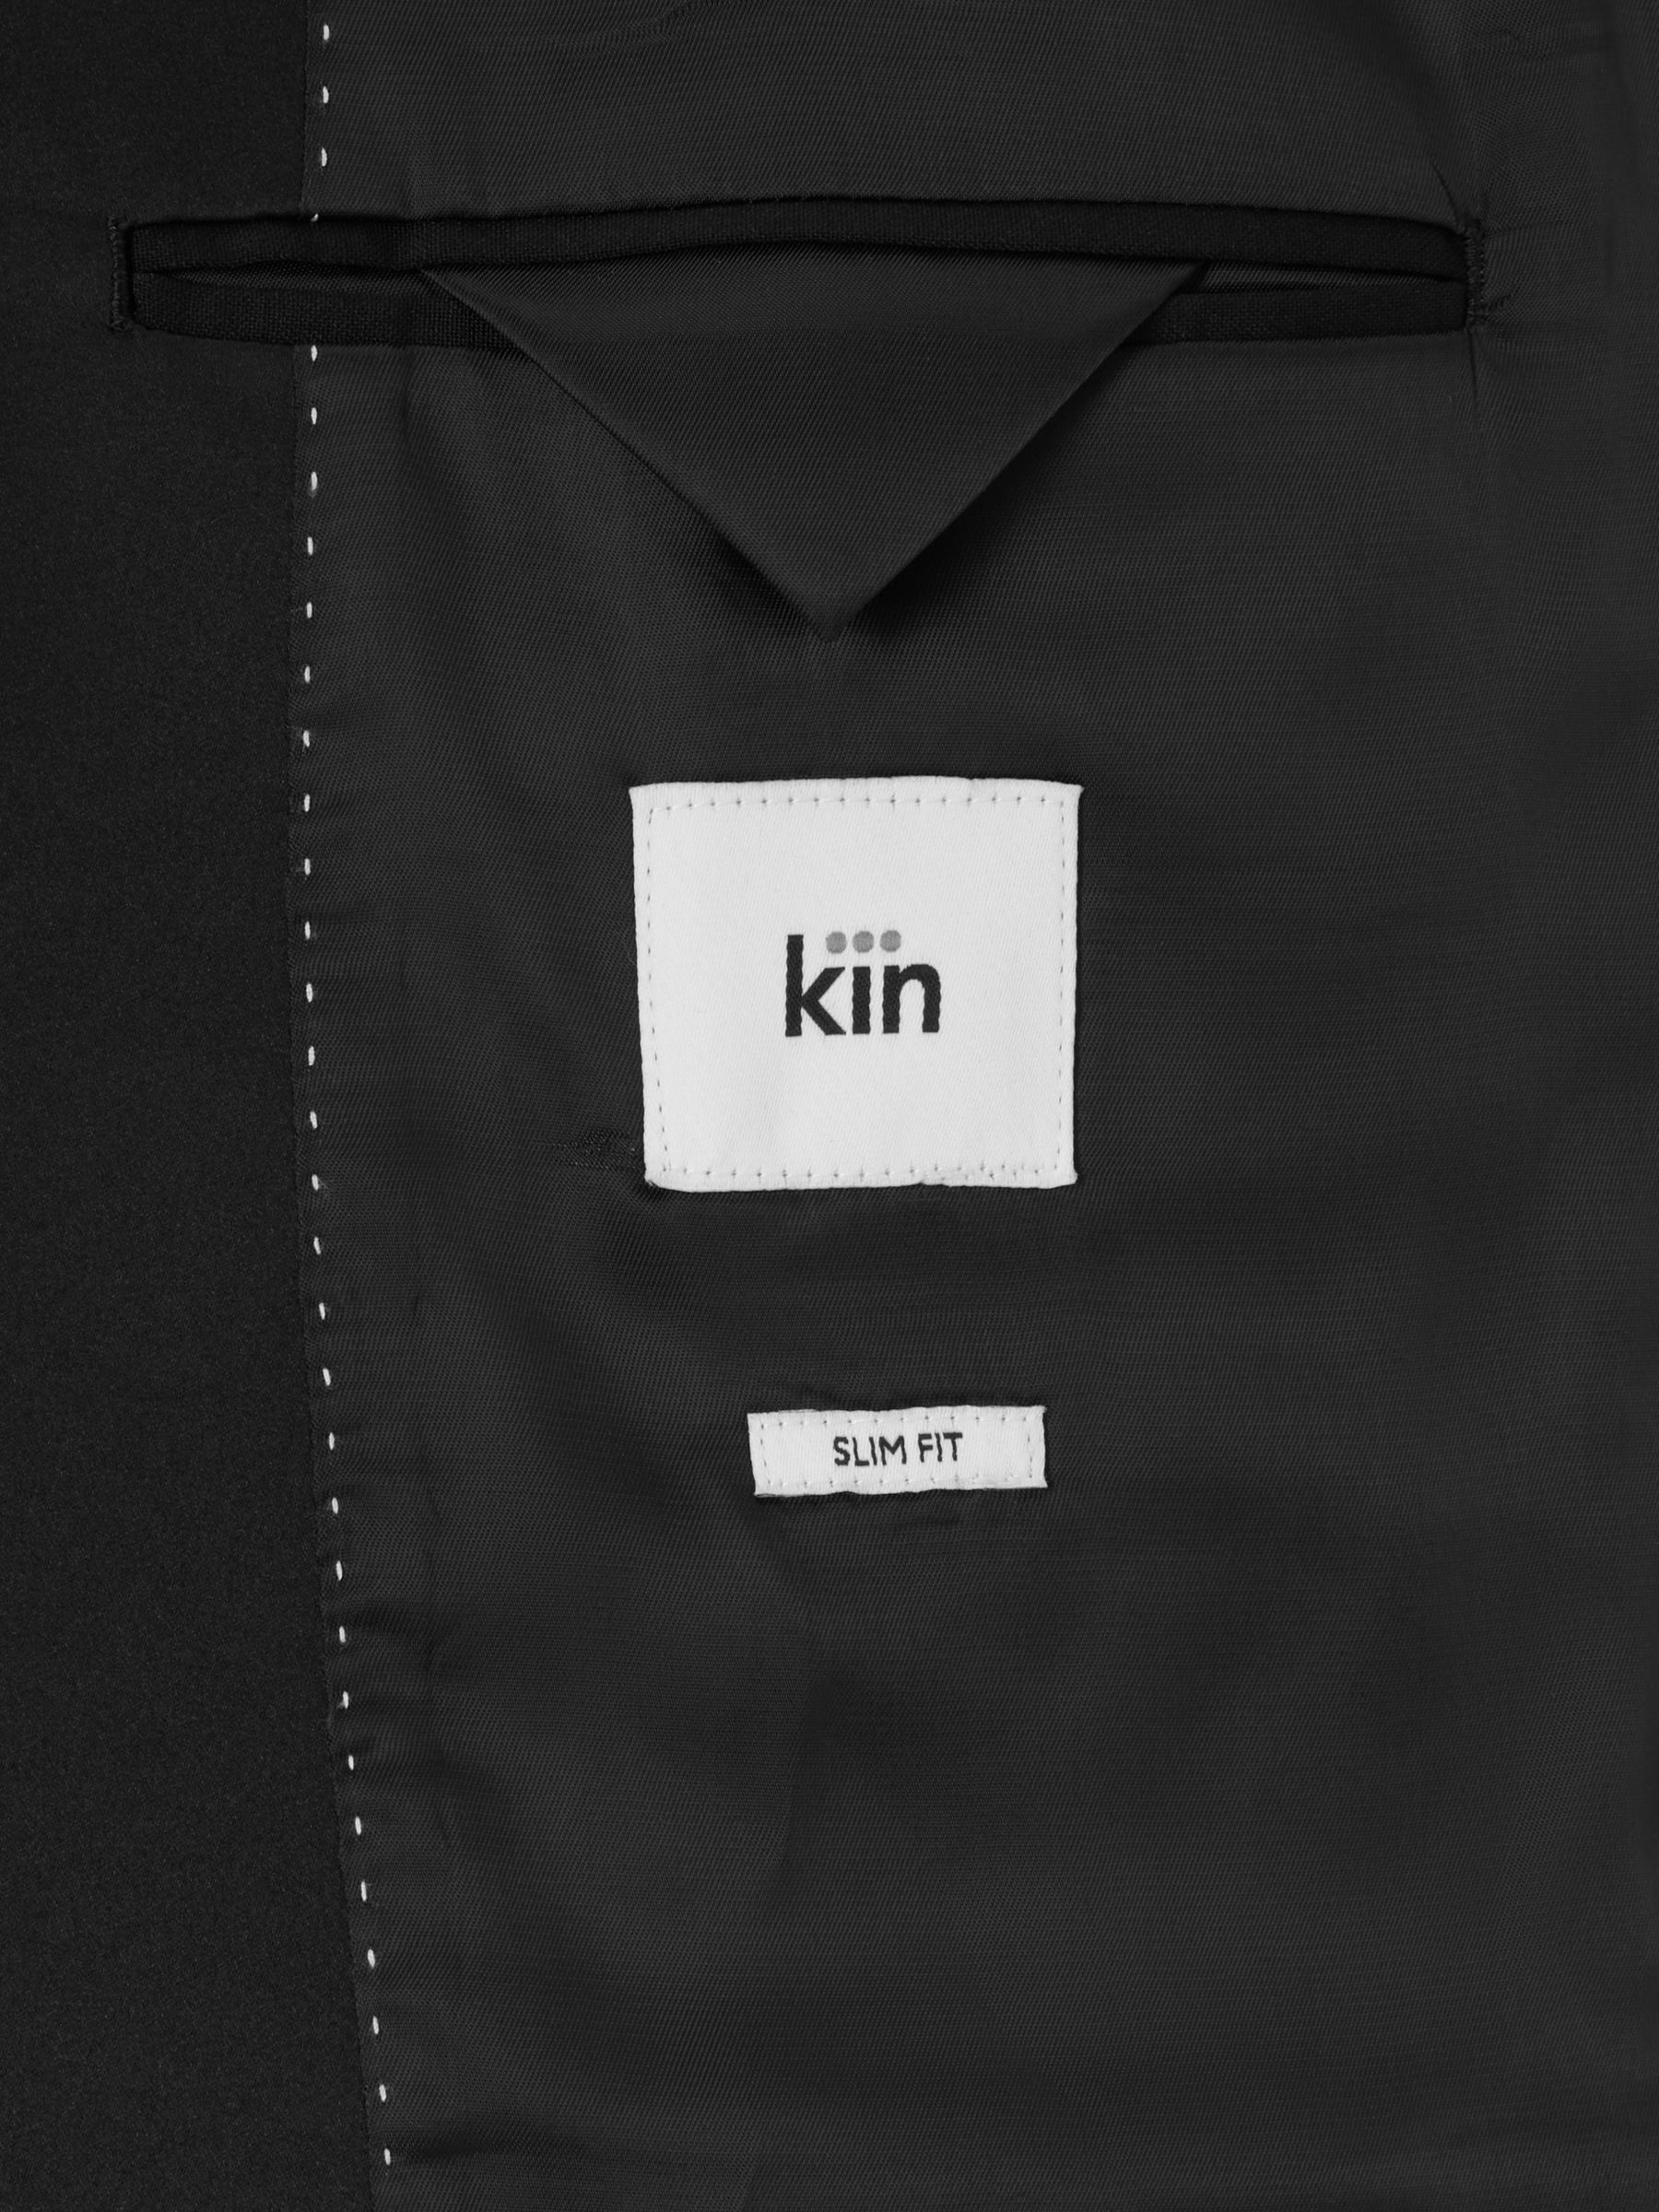 Kin Peak Slim Fit Dinner Jacket, Black at John Lewis & Partners